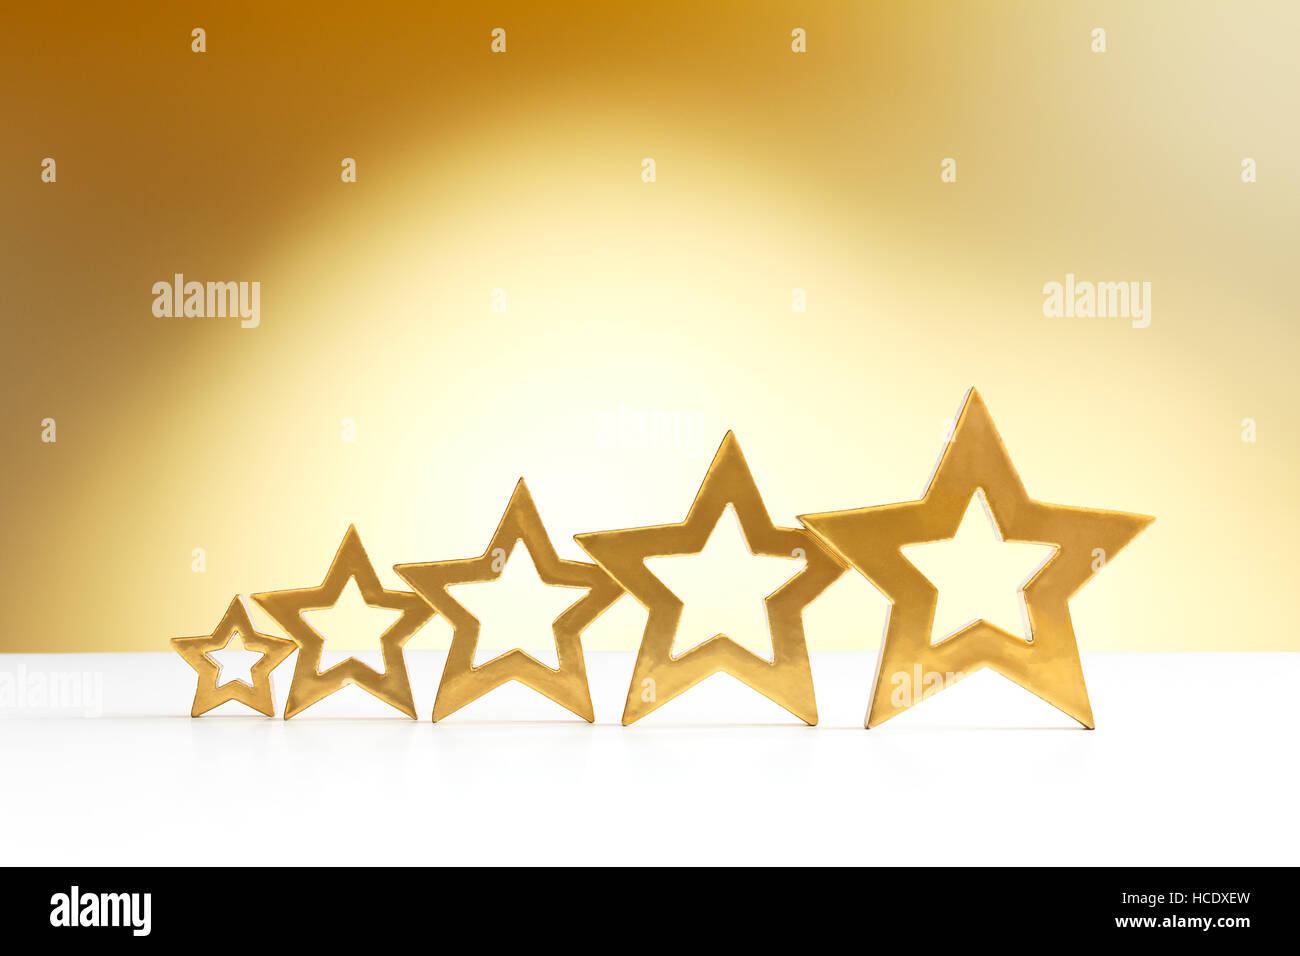 Fünf Goldene strahlende Sterne in aufsteigender Reihenfolge auf weißen und gelben Hintergrund mit einem Scheinwerfer, Textfreiraum Stockfoto